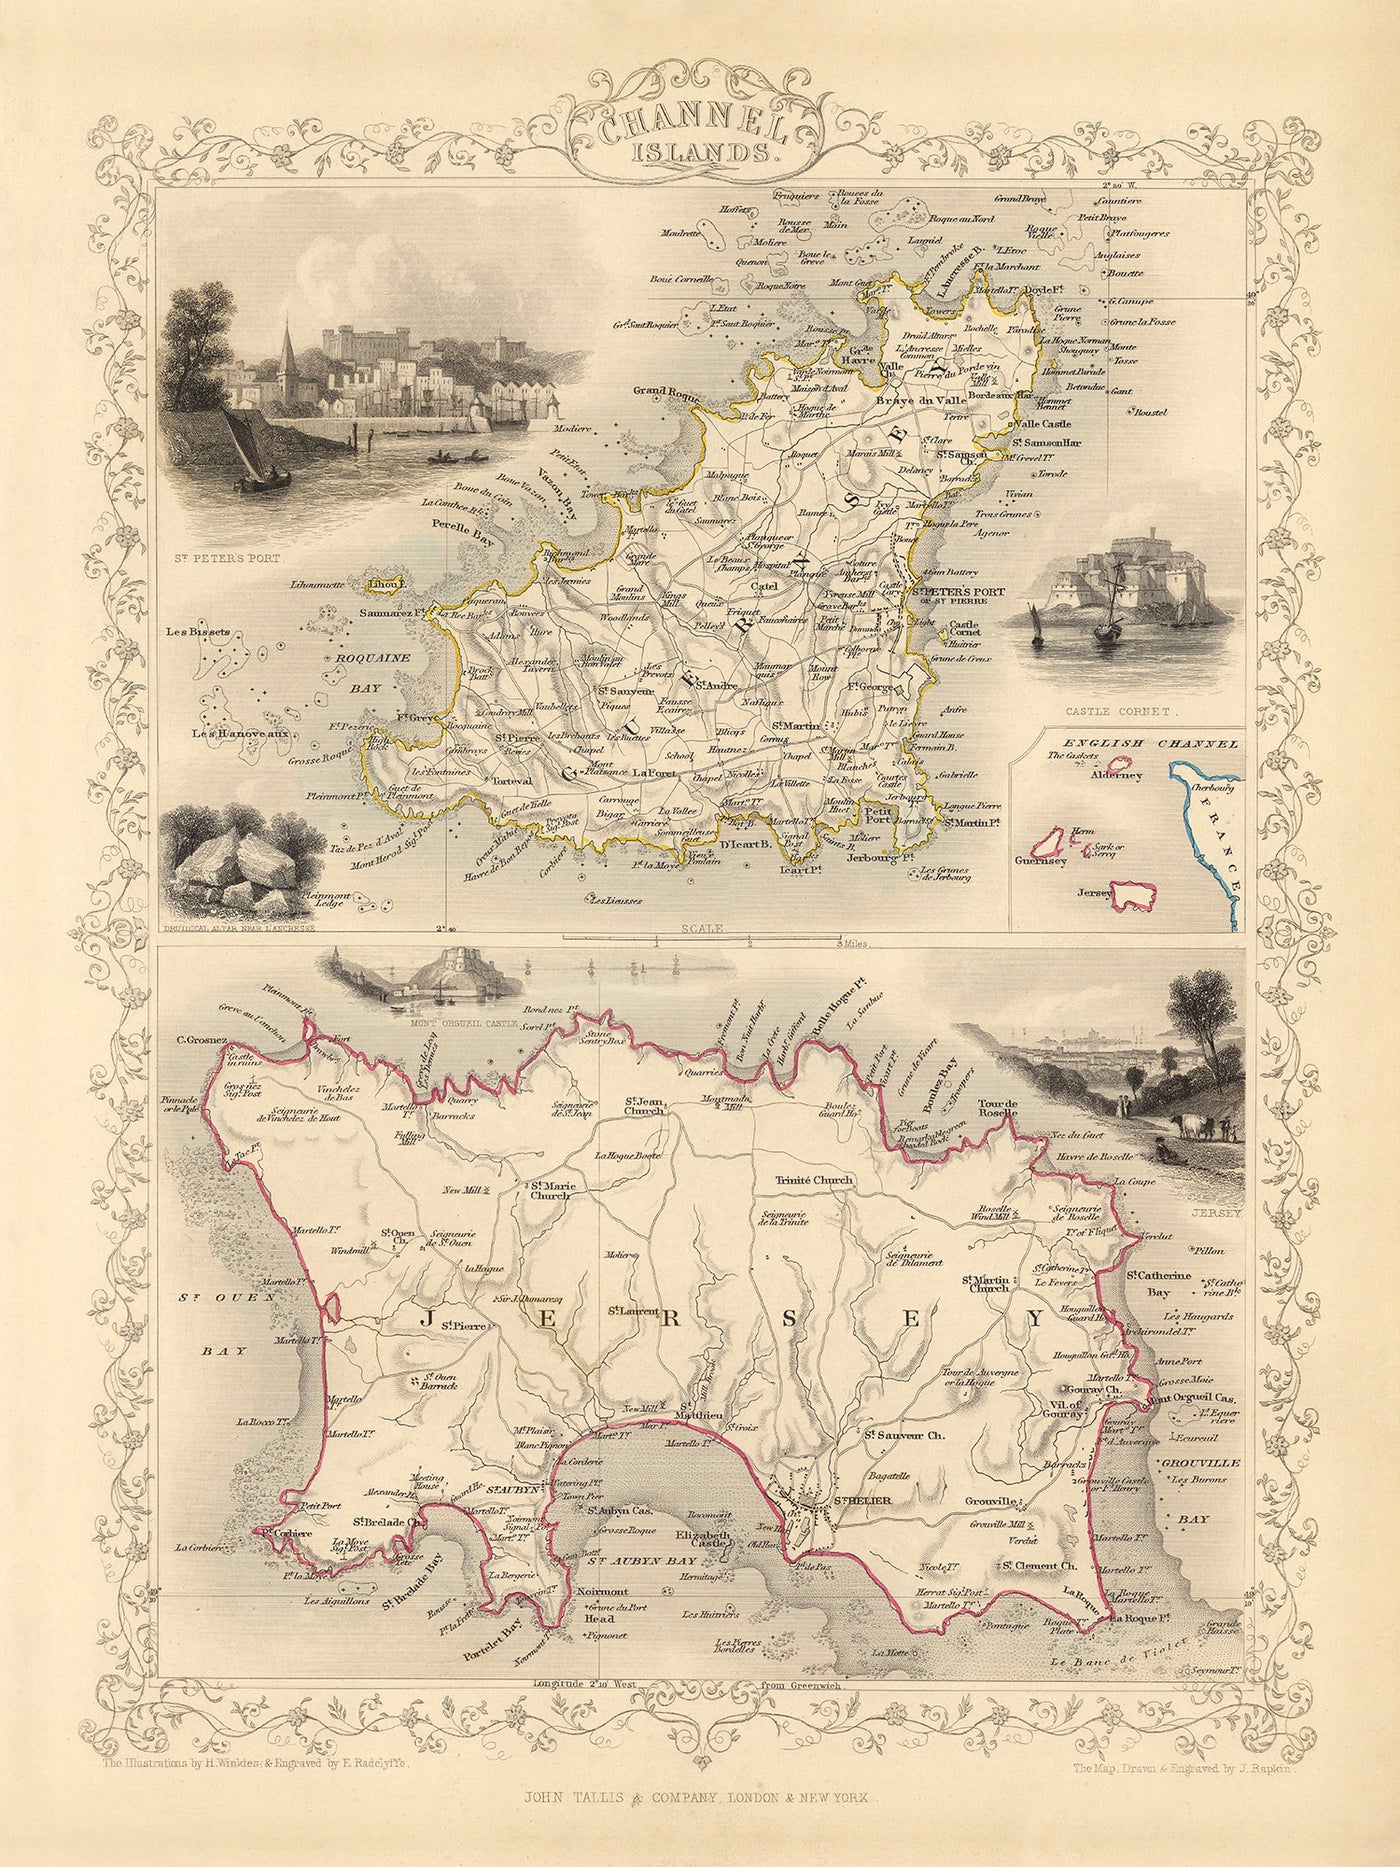 Alte Karte der Kanalinseln (Jersey und Guernsey) von Tallis & Rapkin 1851: St. Helier, St. Peter Port, Gorey, Castle Cornet, Elizabeth Castle